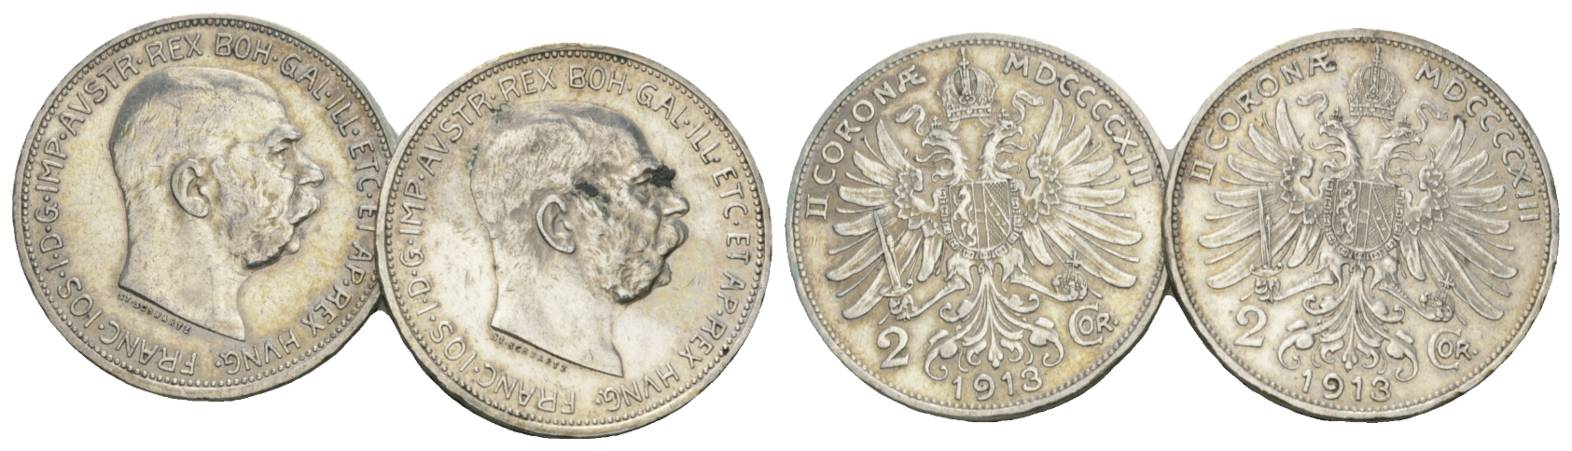  Österreich, 2 Kleinmünzen (2 Kronen 1913)   